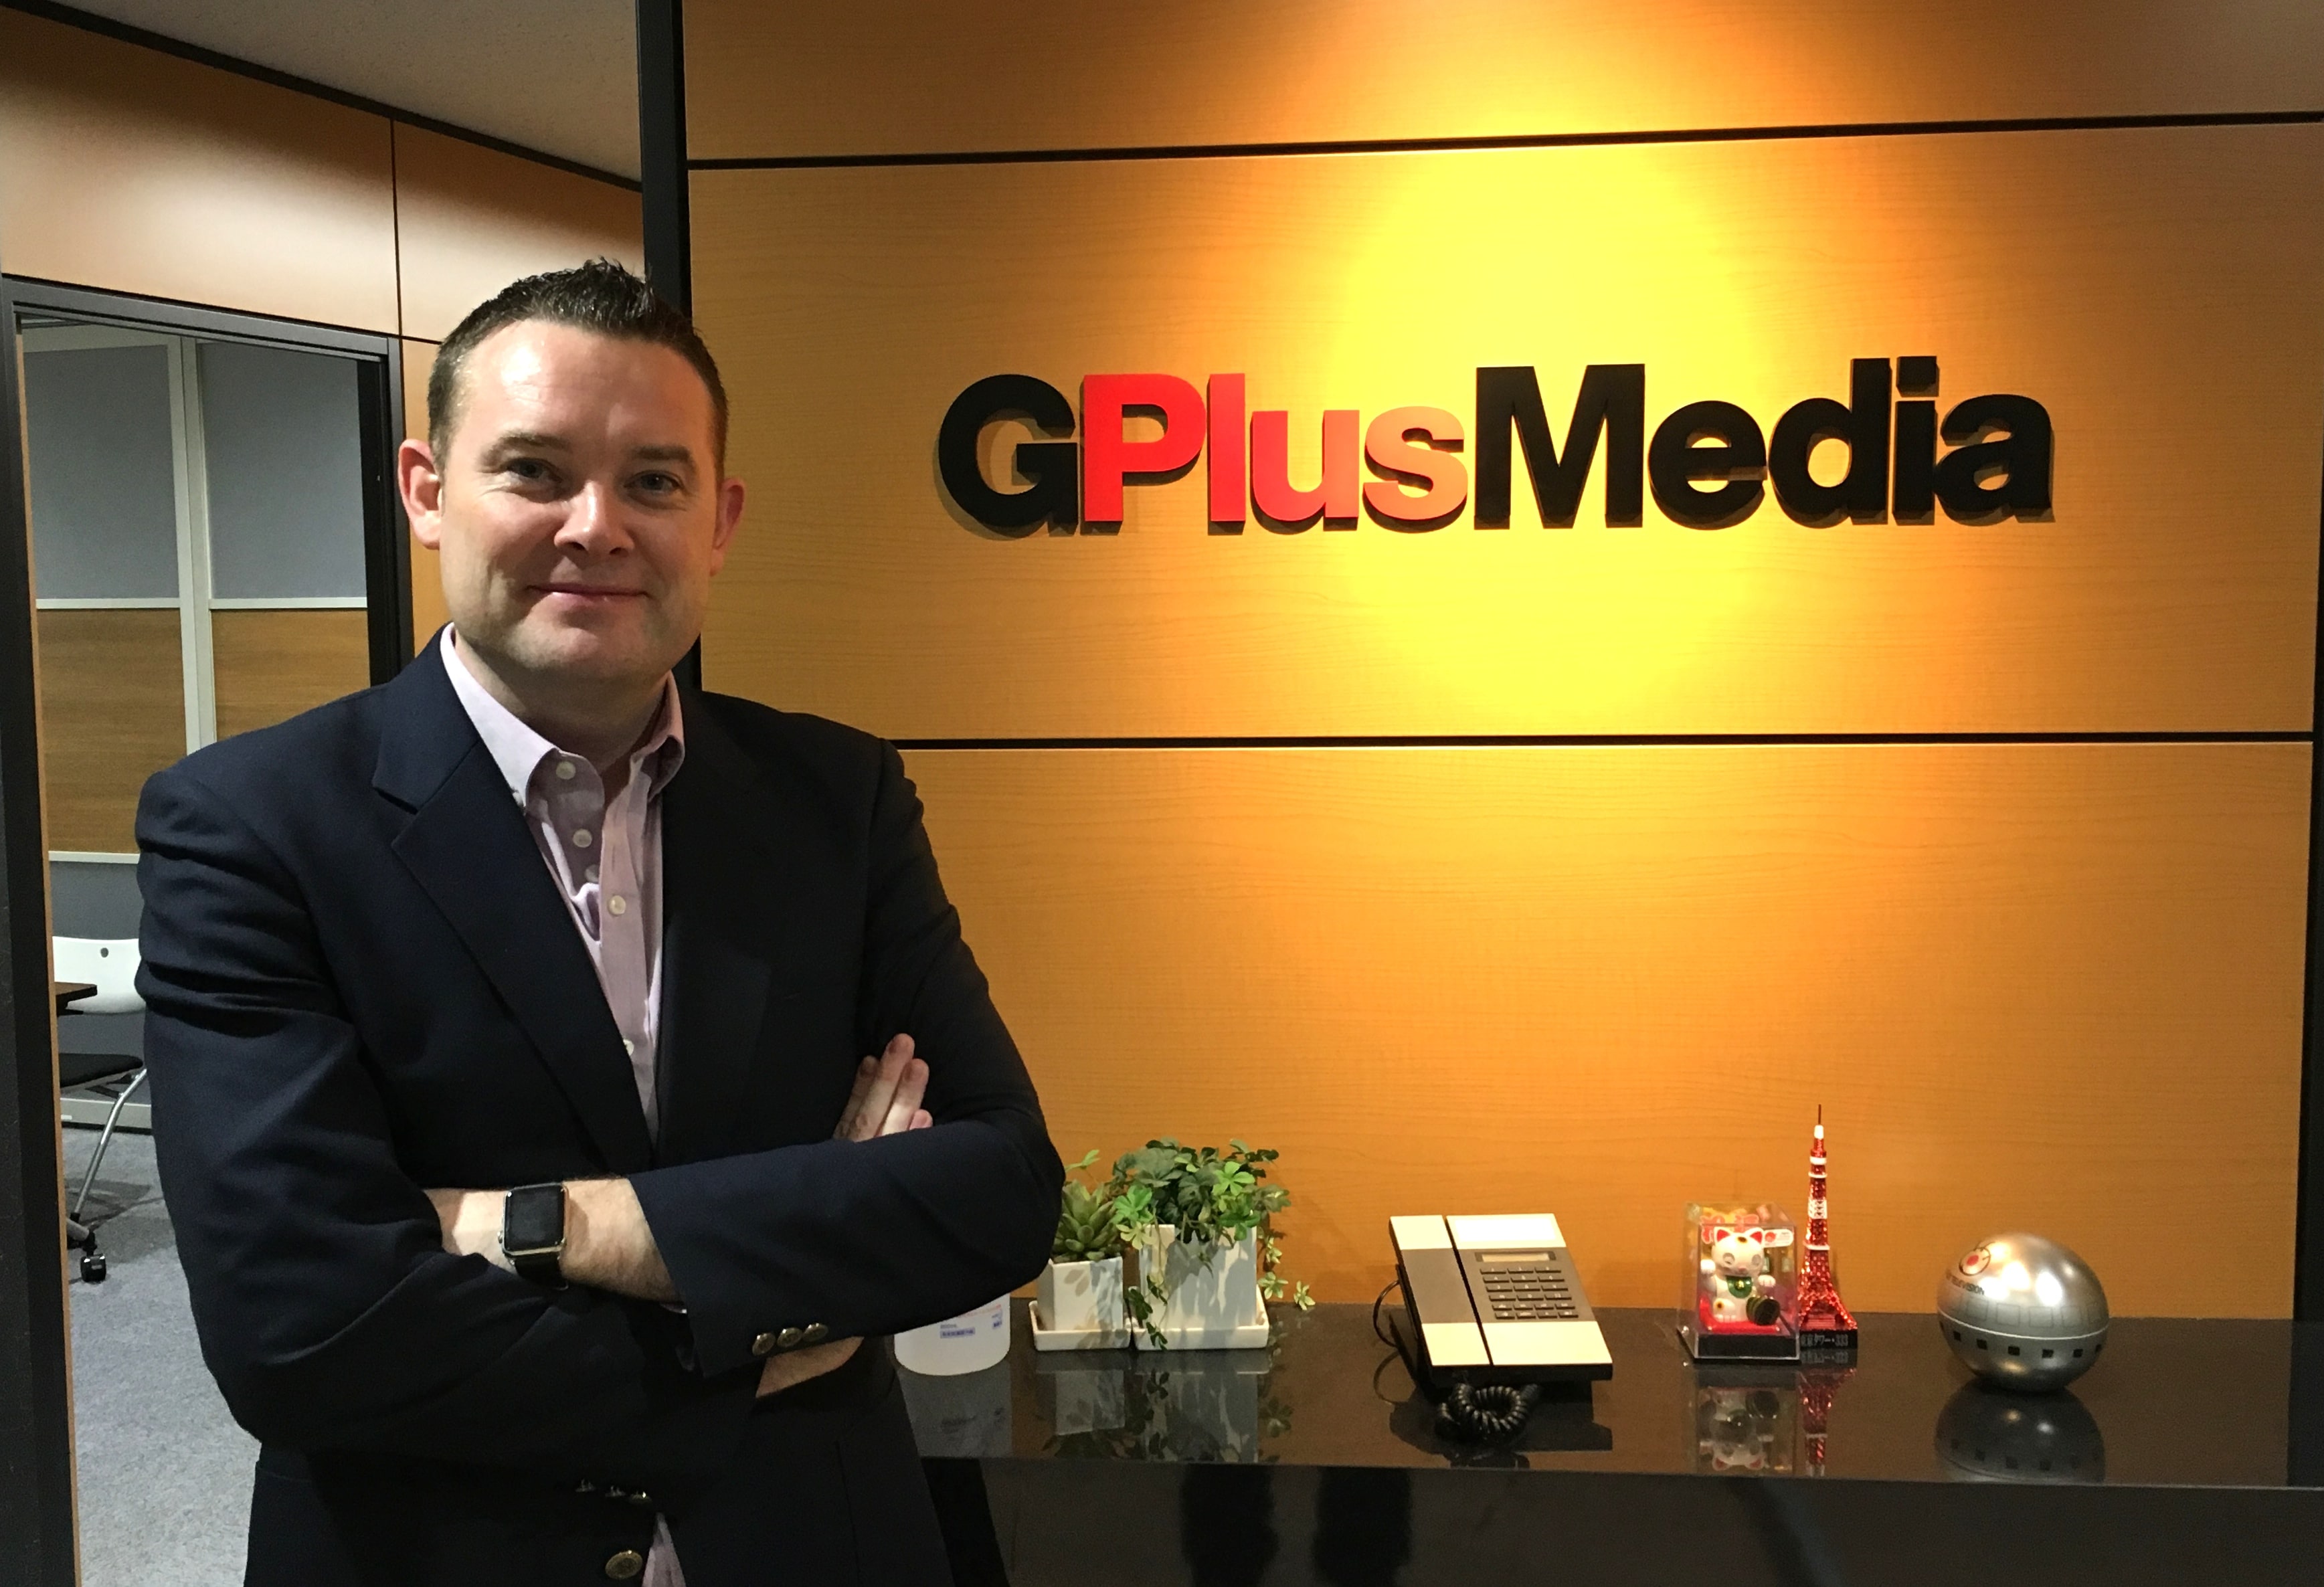 Member Feature: GPlus Media